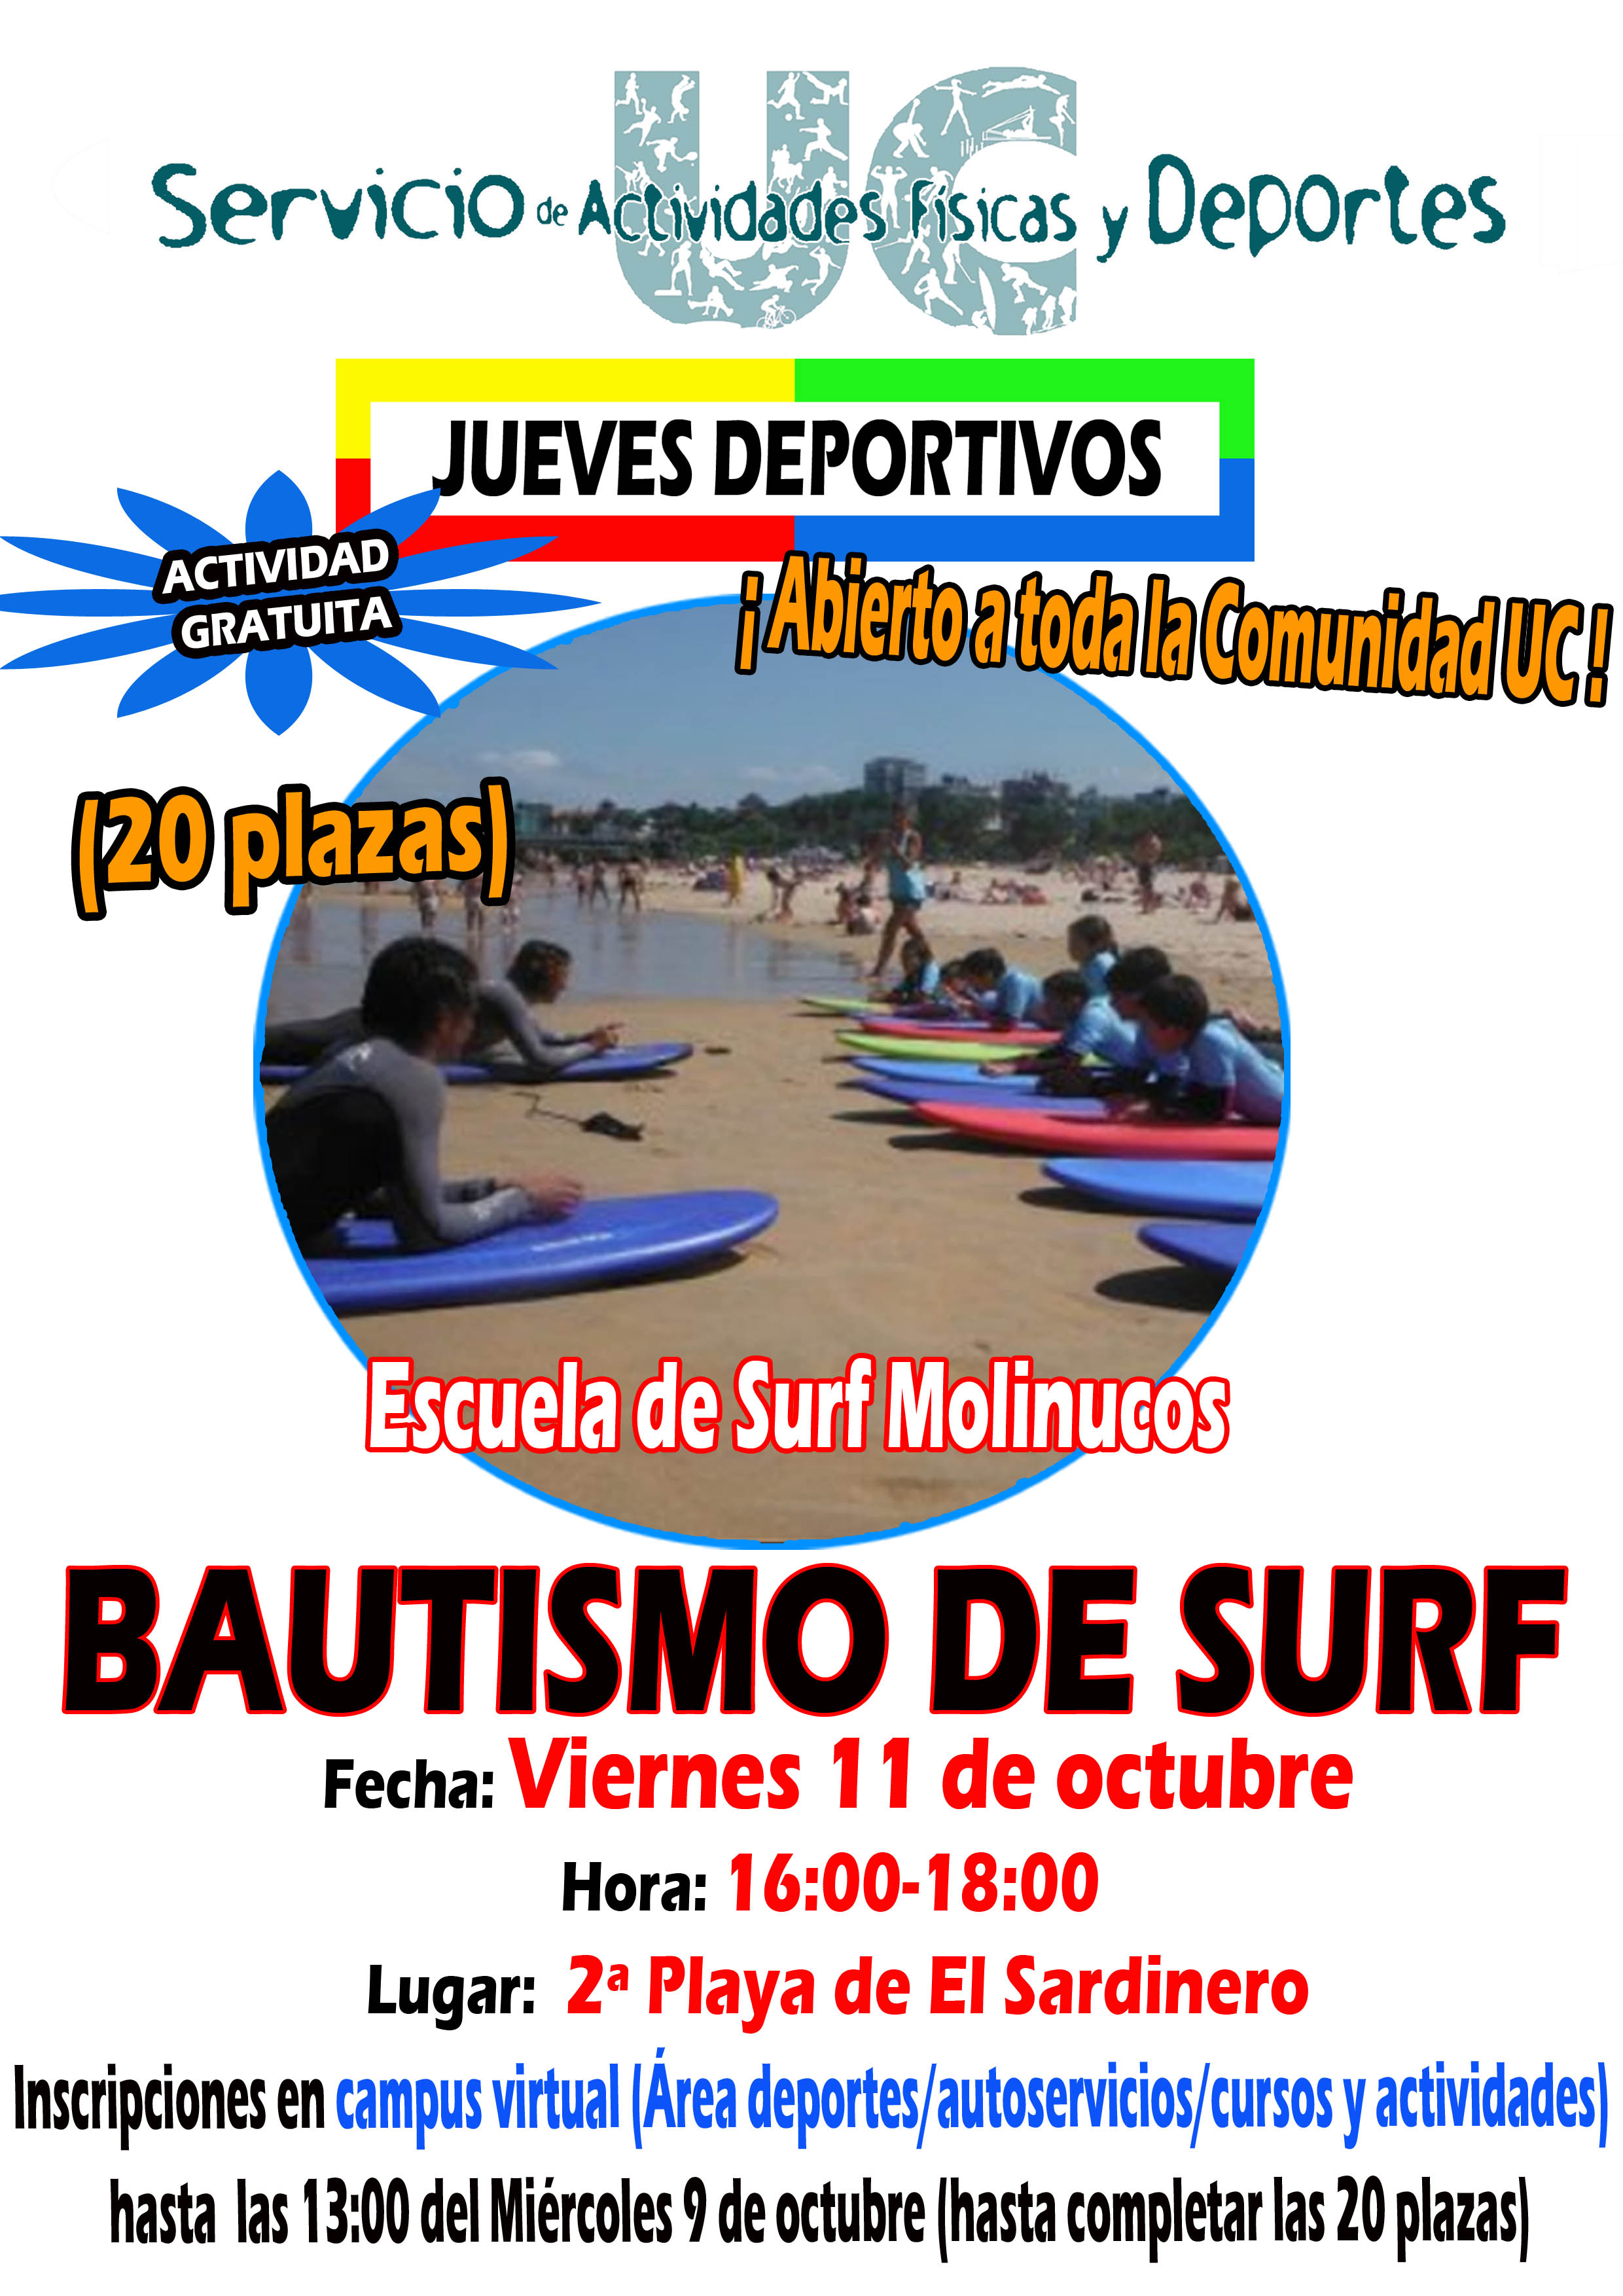 Bautismo de Surf en El Sardinero